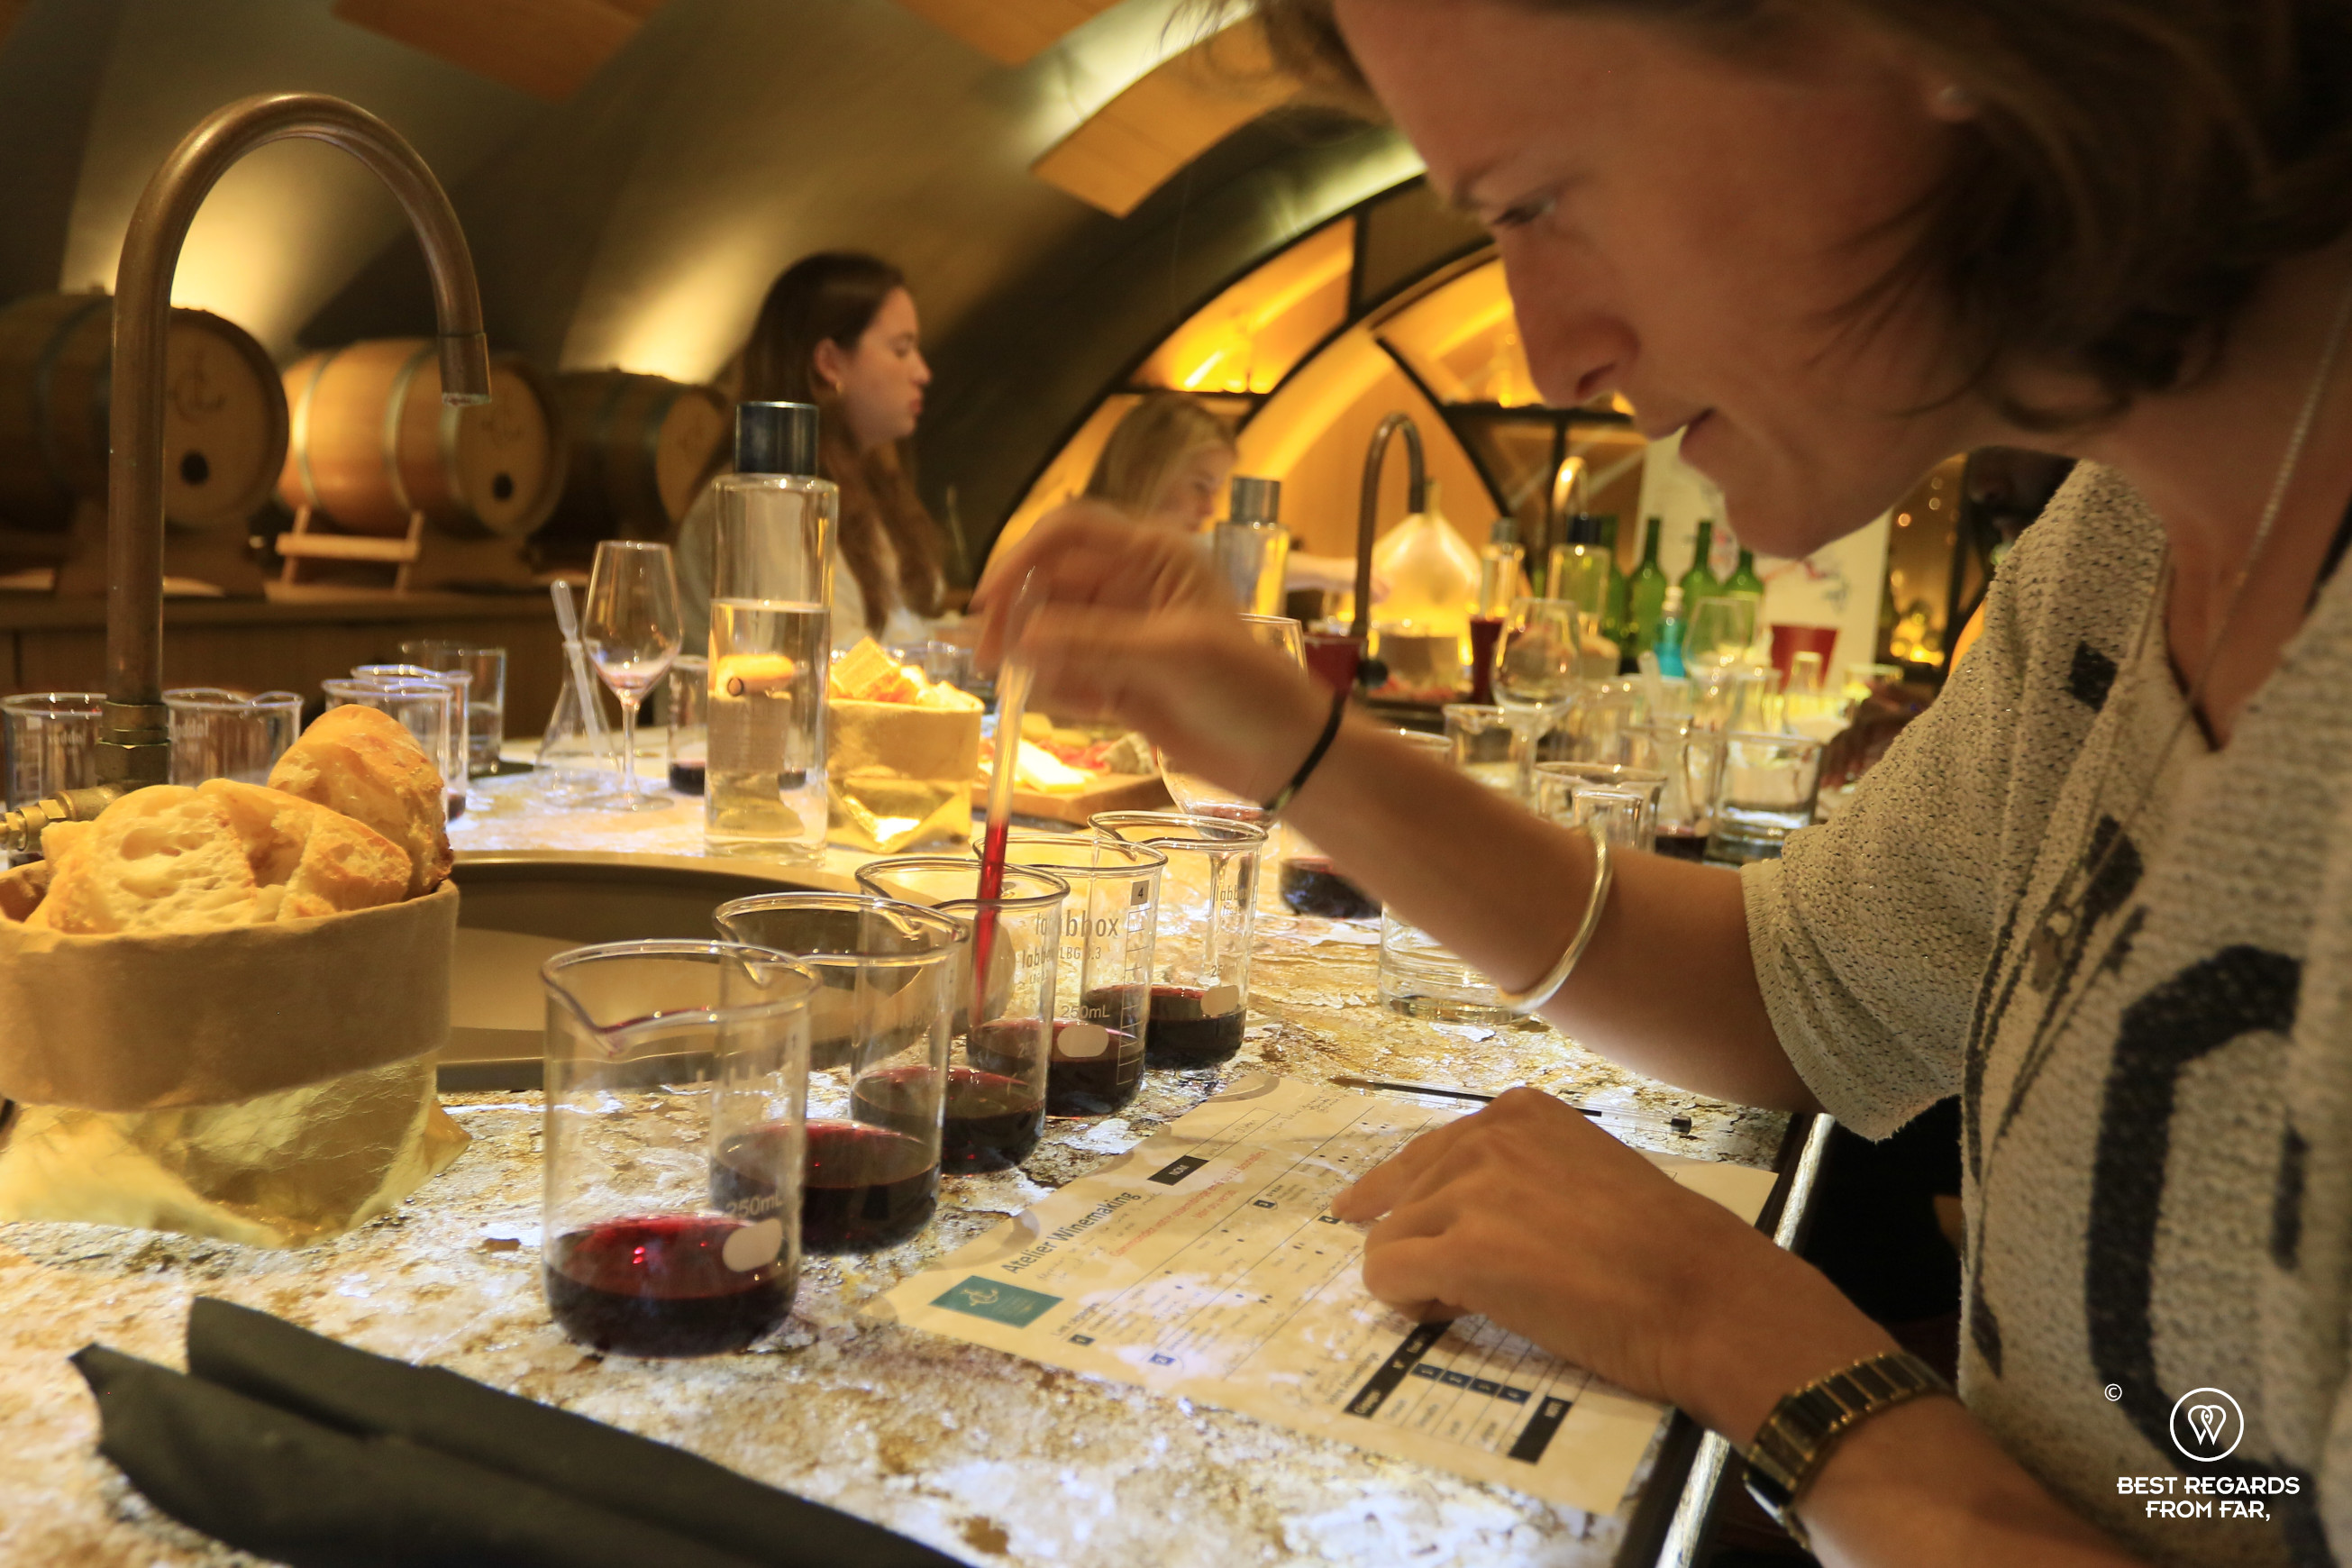 Winemaking workshop at Les Caves du Louvre, Paris